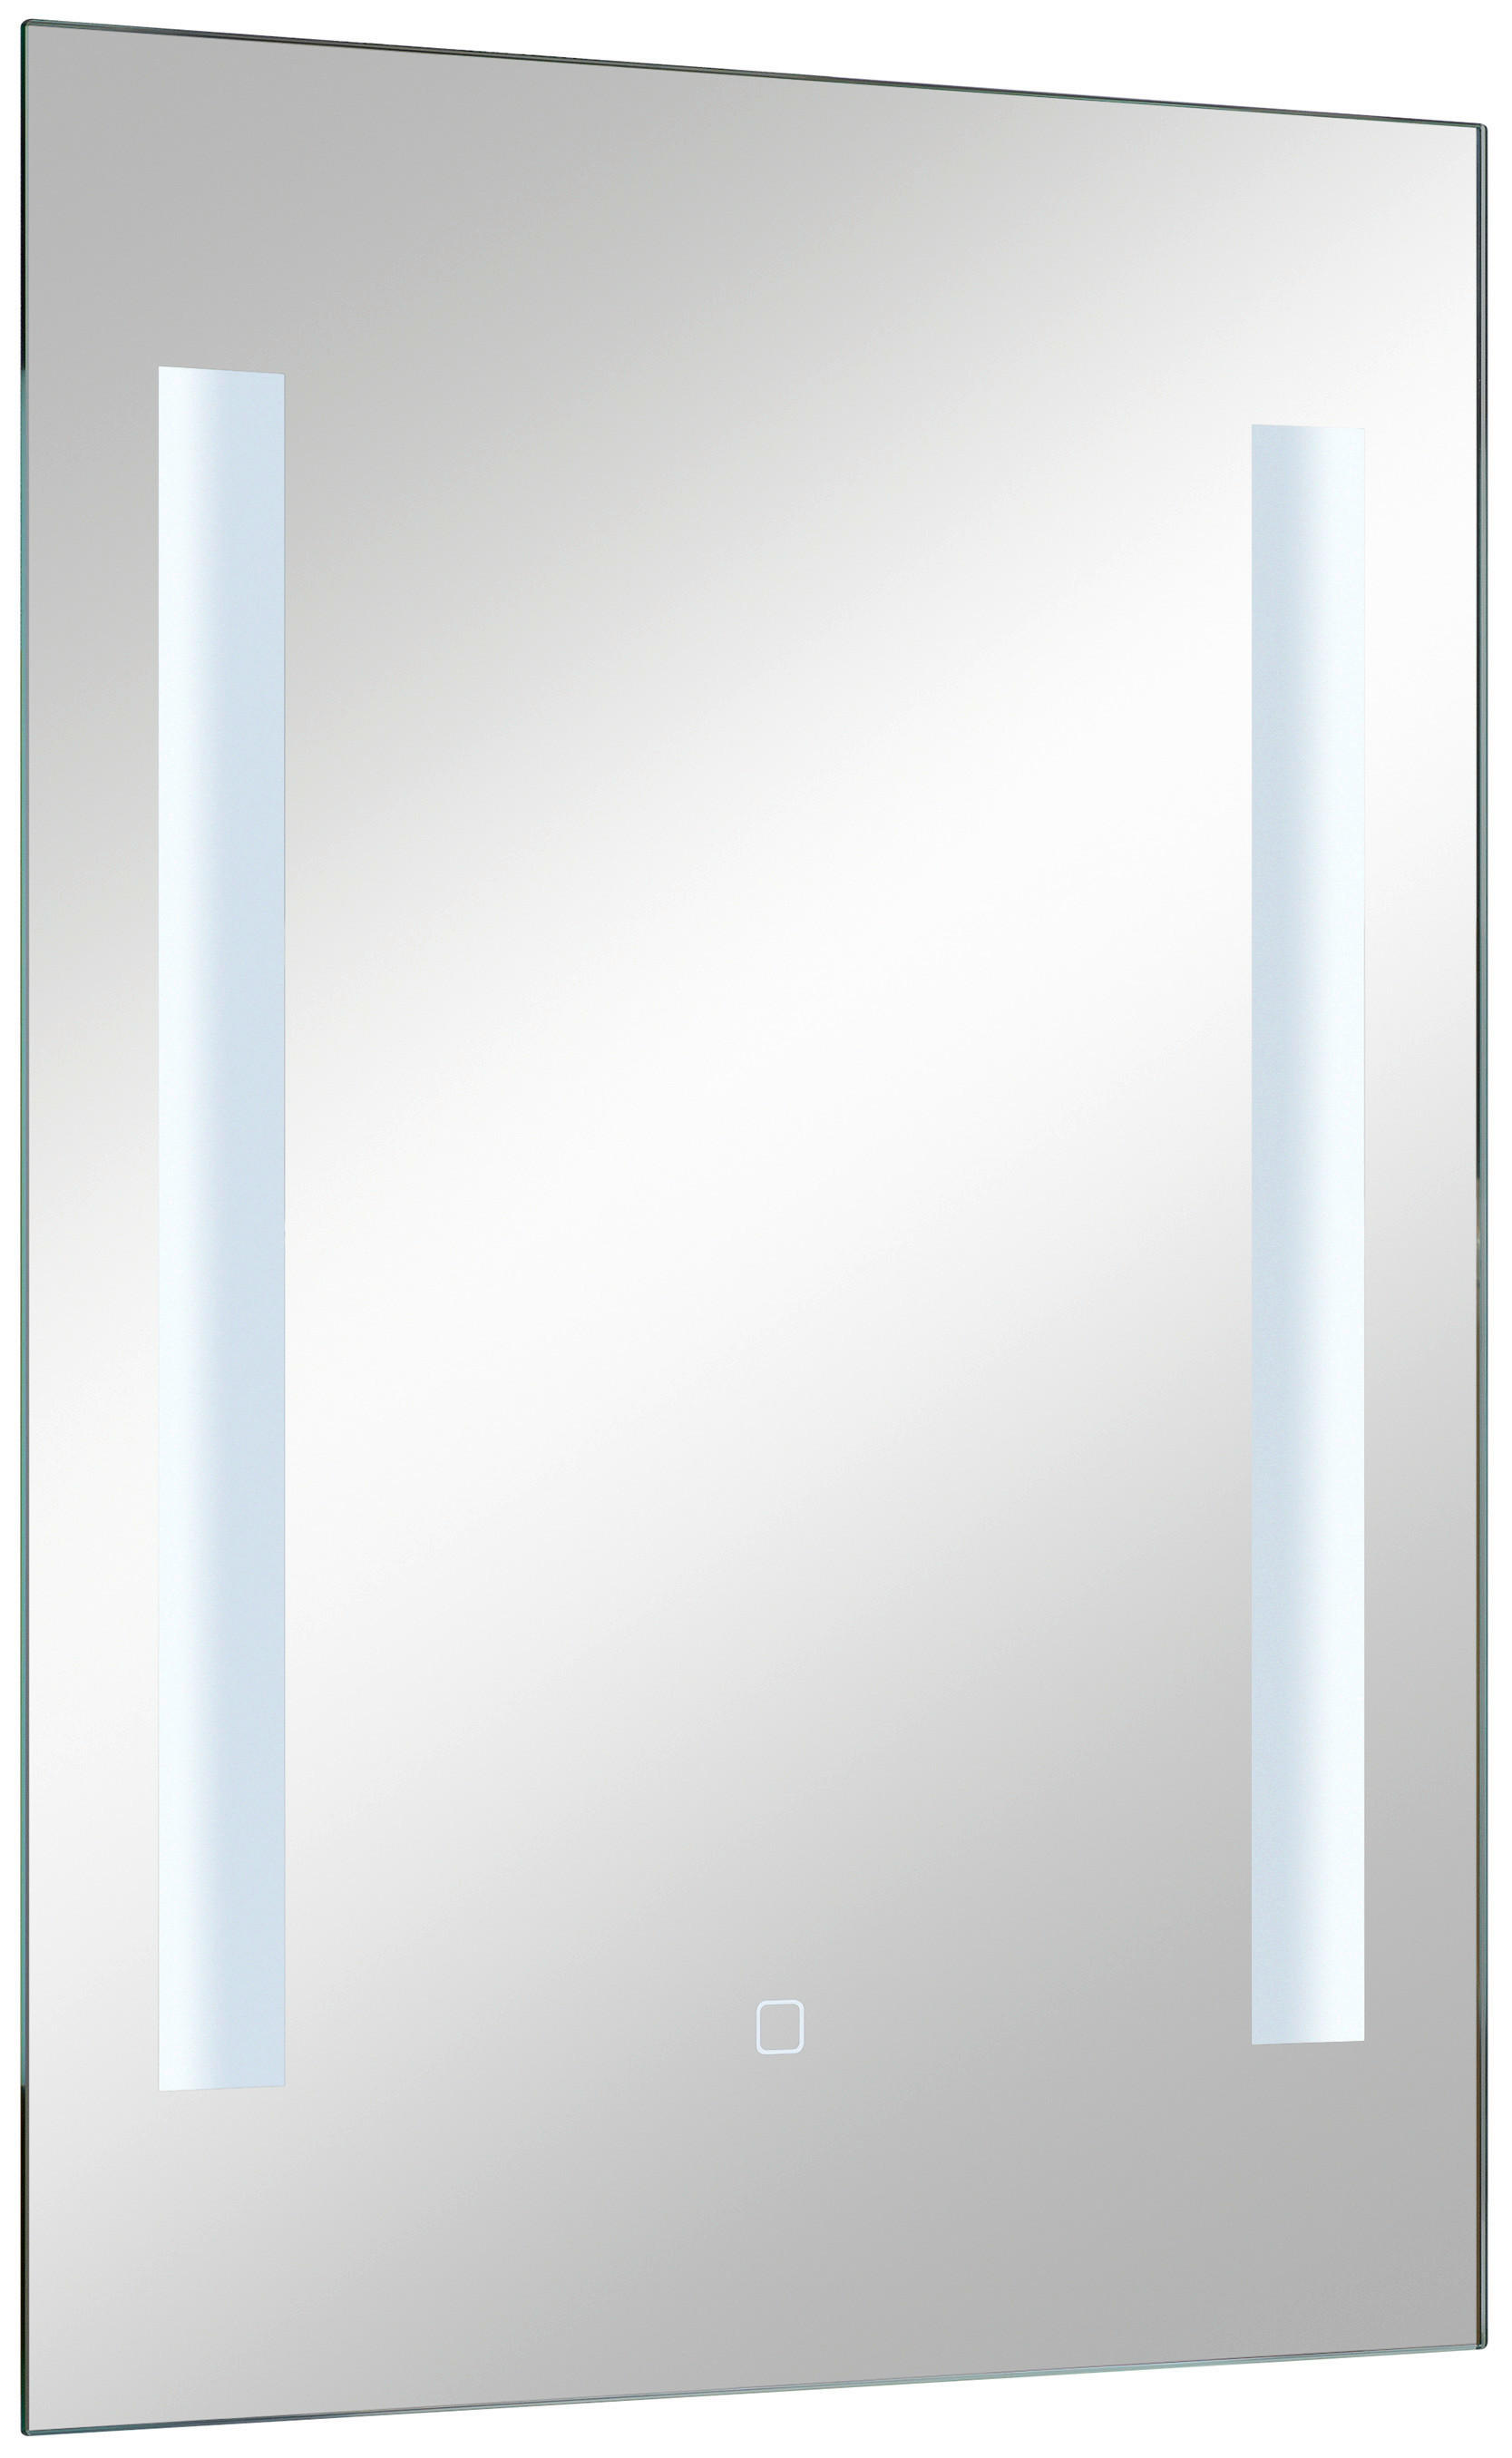 OGLEDALO ZA KOPALNICO, 50/70/3 cm steklo  - Basics, steklo (50/70/3cm) - Xora